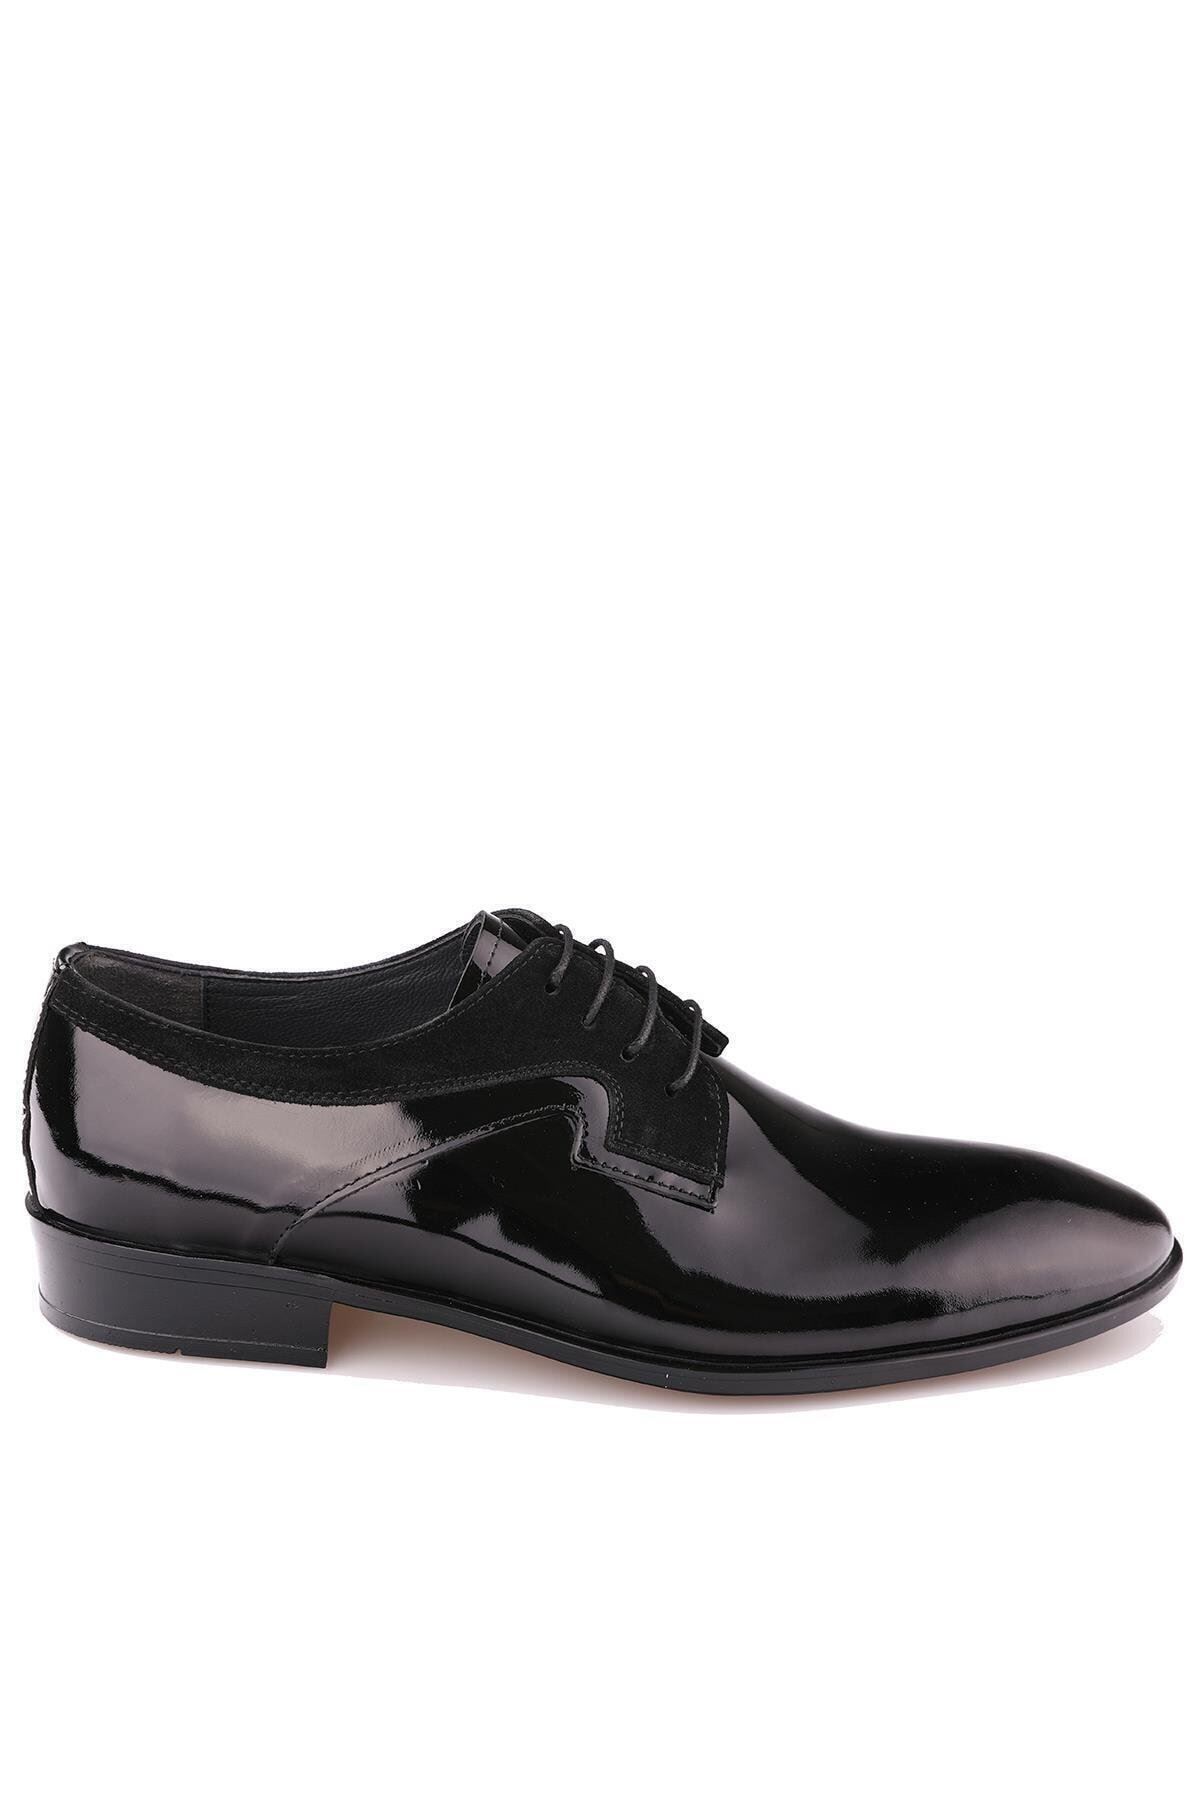 Gizli Topuklu Hakiki Deri Siyah Erkek Klasik Ayakkabı MYY136